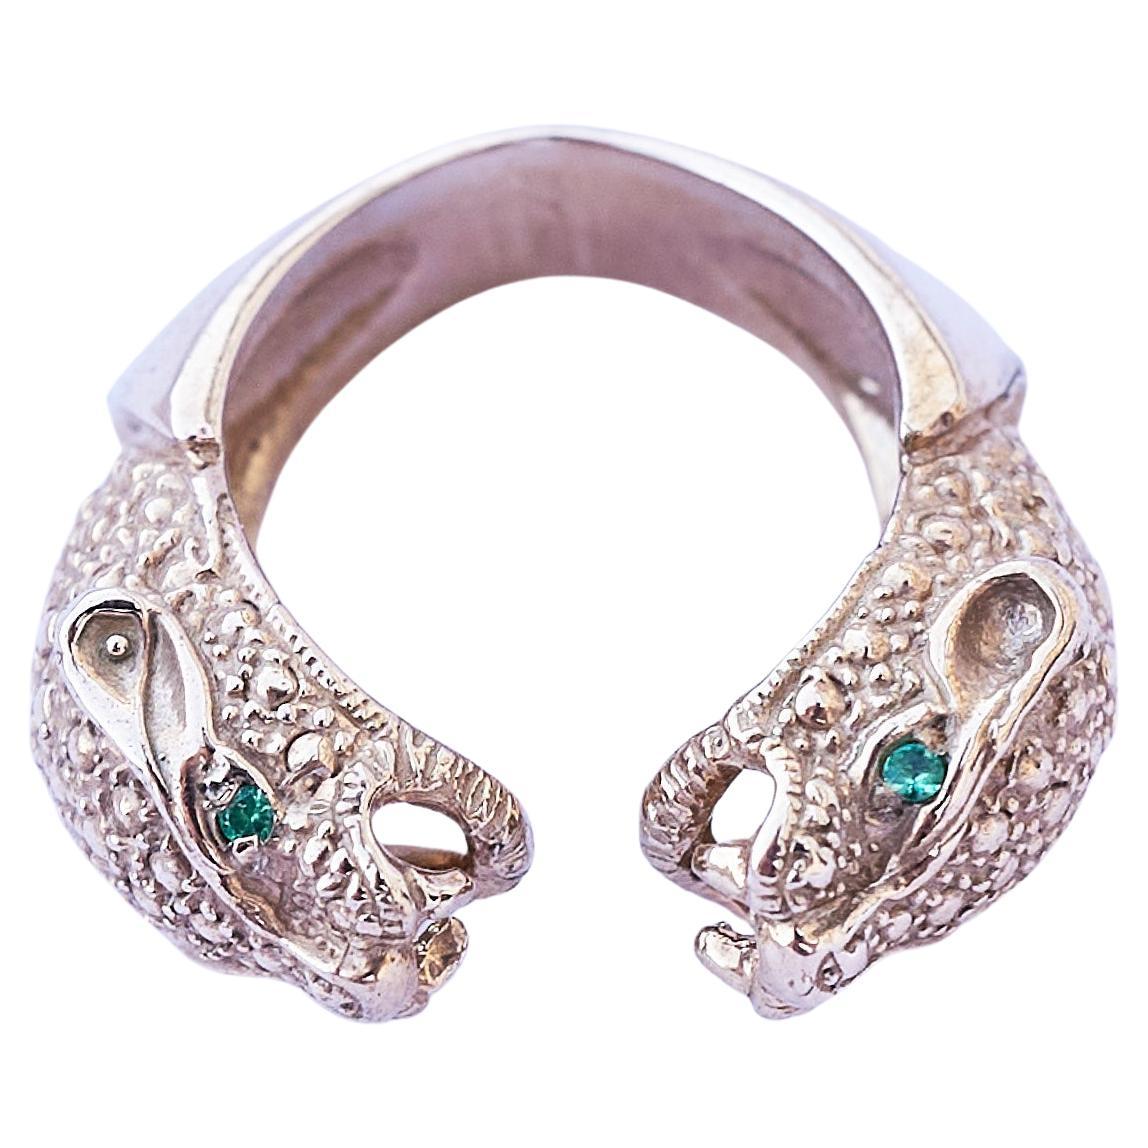 4 Stück Smaragd Doppelkopf Jaguar Ring Bronze Cocktail Ring Tierschmuck J DAUPHIN

Offener Ring winzig einstellbar zwischen den Größen 5-8 

Handgefertigt in Los Angeles

In der Mythologie der Maya galt der Jaguar als Herrscher der Unterwelt und